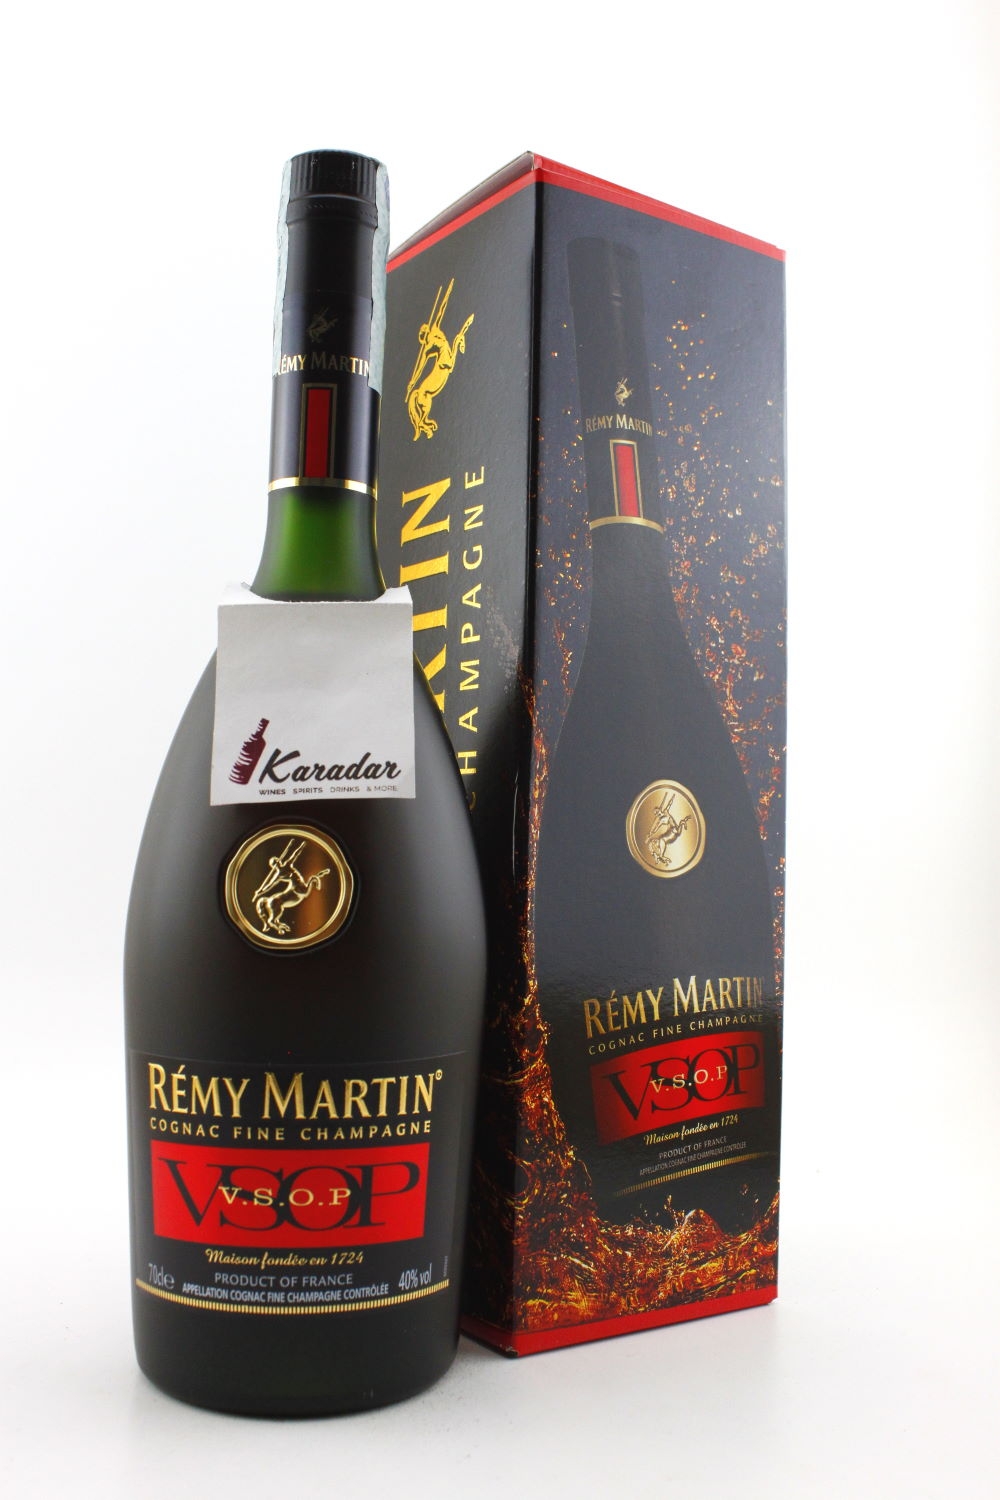 40% Martin vol. V.S.O.P. Cognac Fine Champagne Cognac Remy